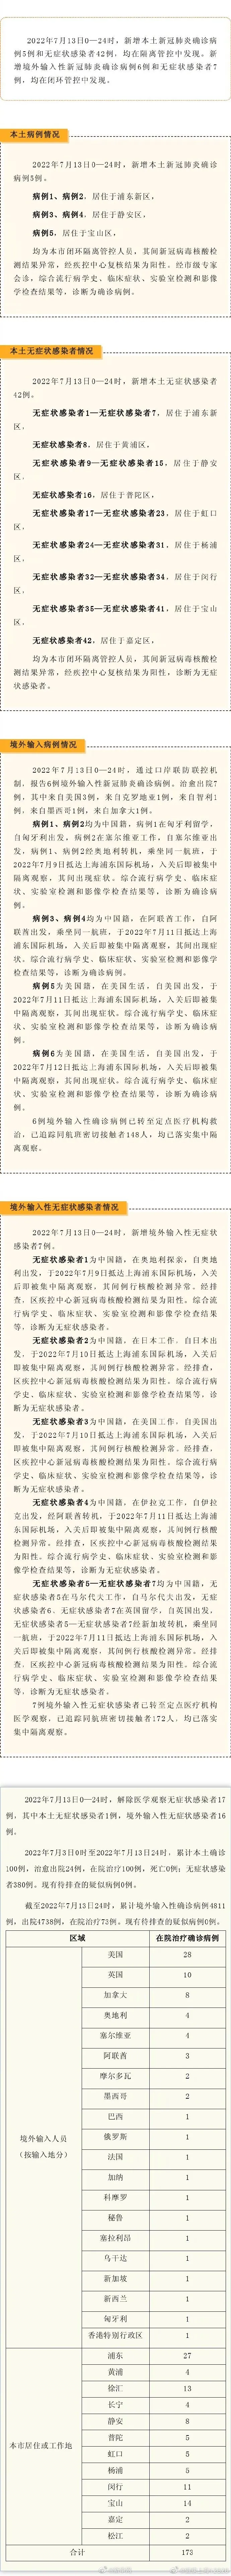 上海新增本土确诊5例无症状42例 上海昨日新增本土确诊病例5例和本土无症状感染者42例